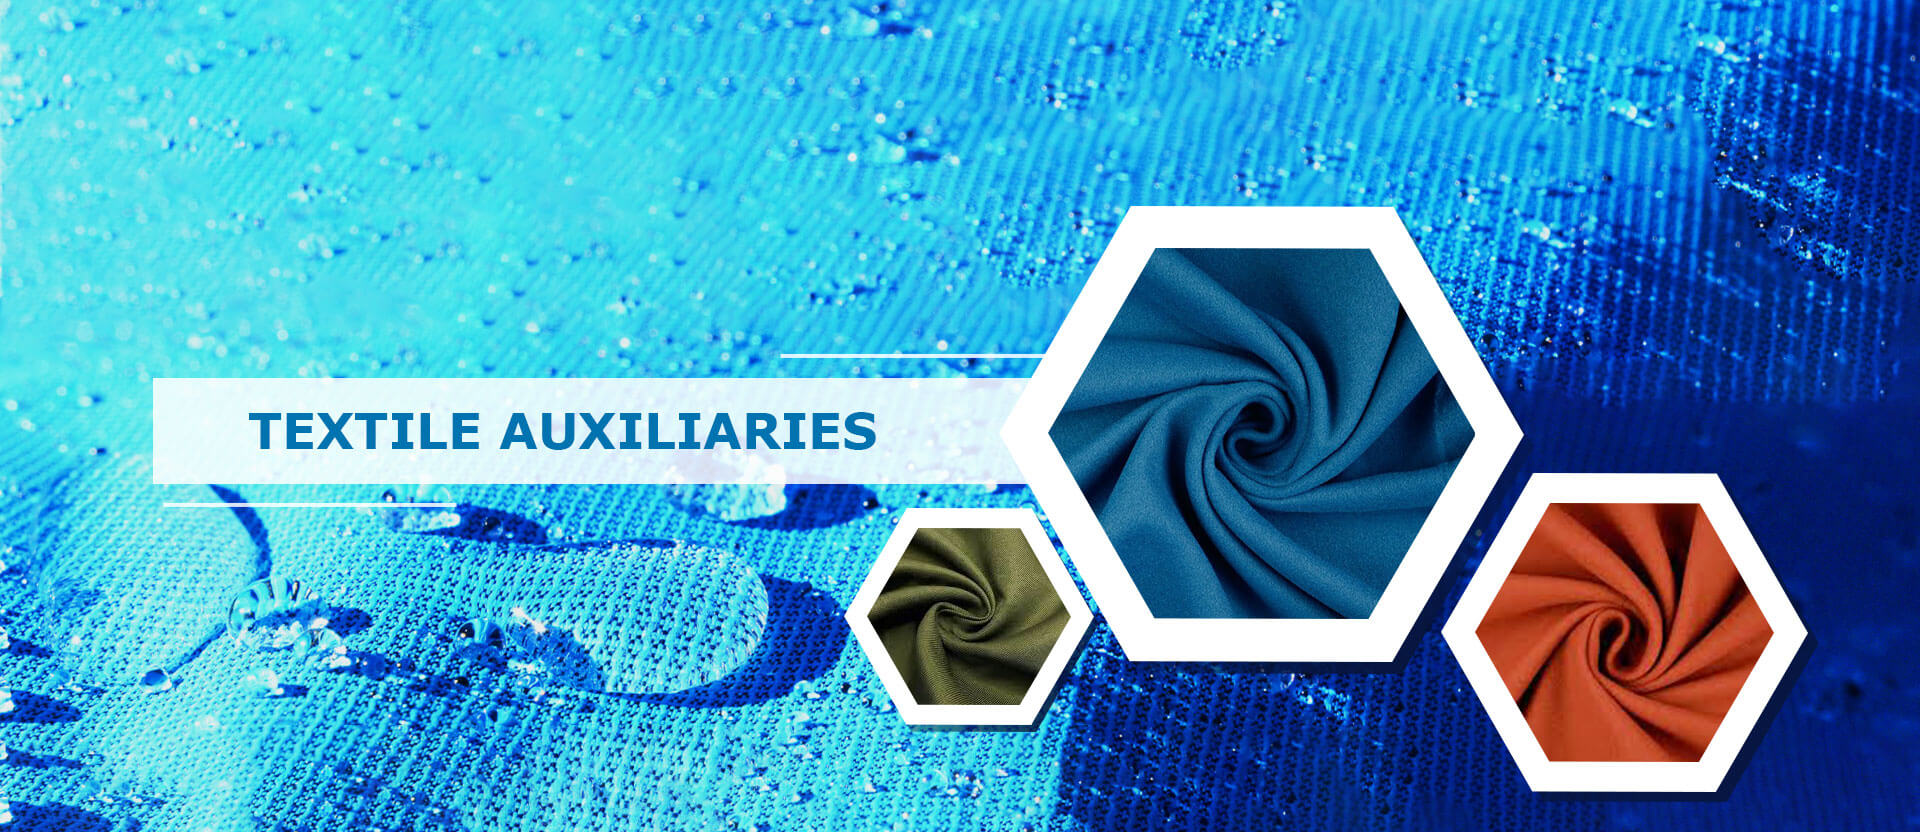 Textile Auxiliaries